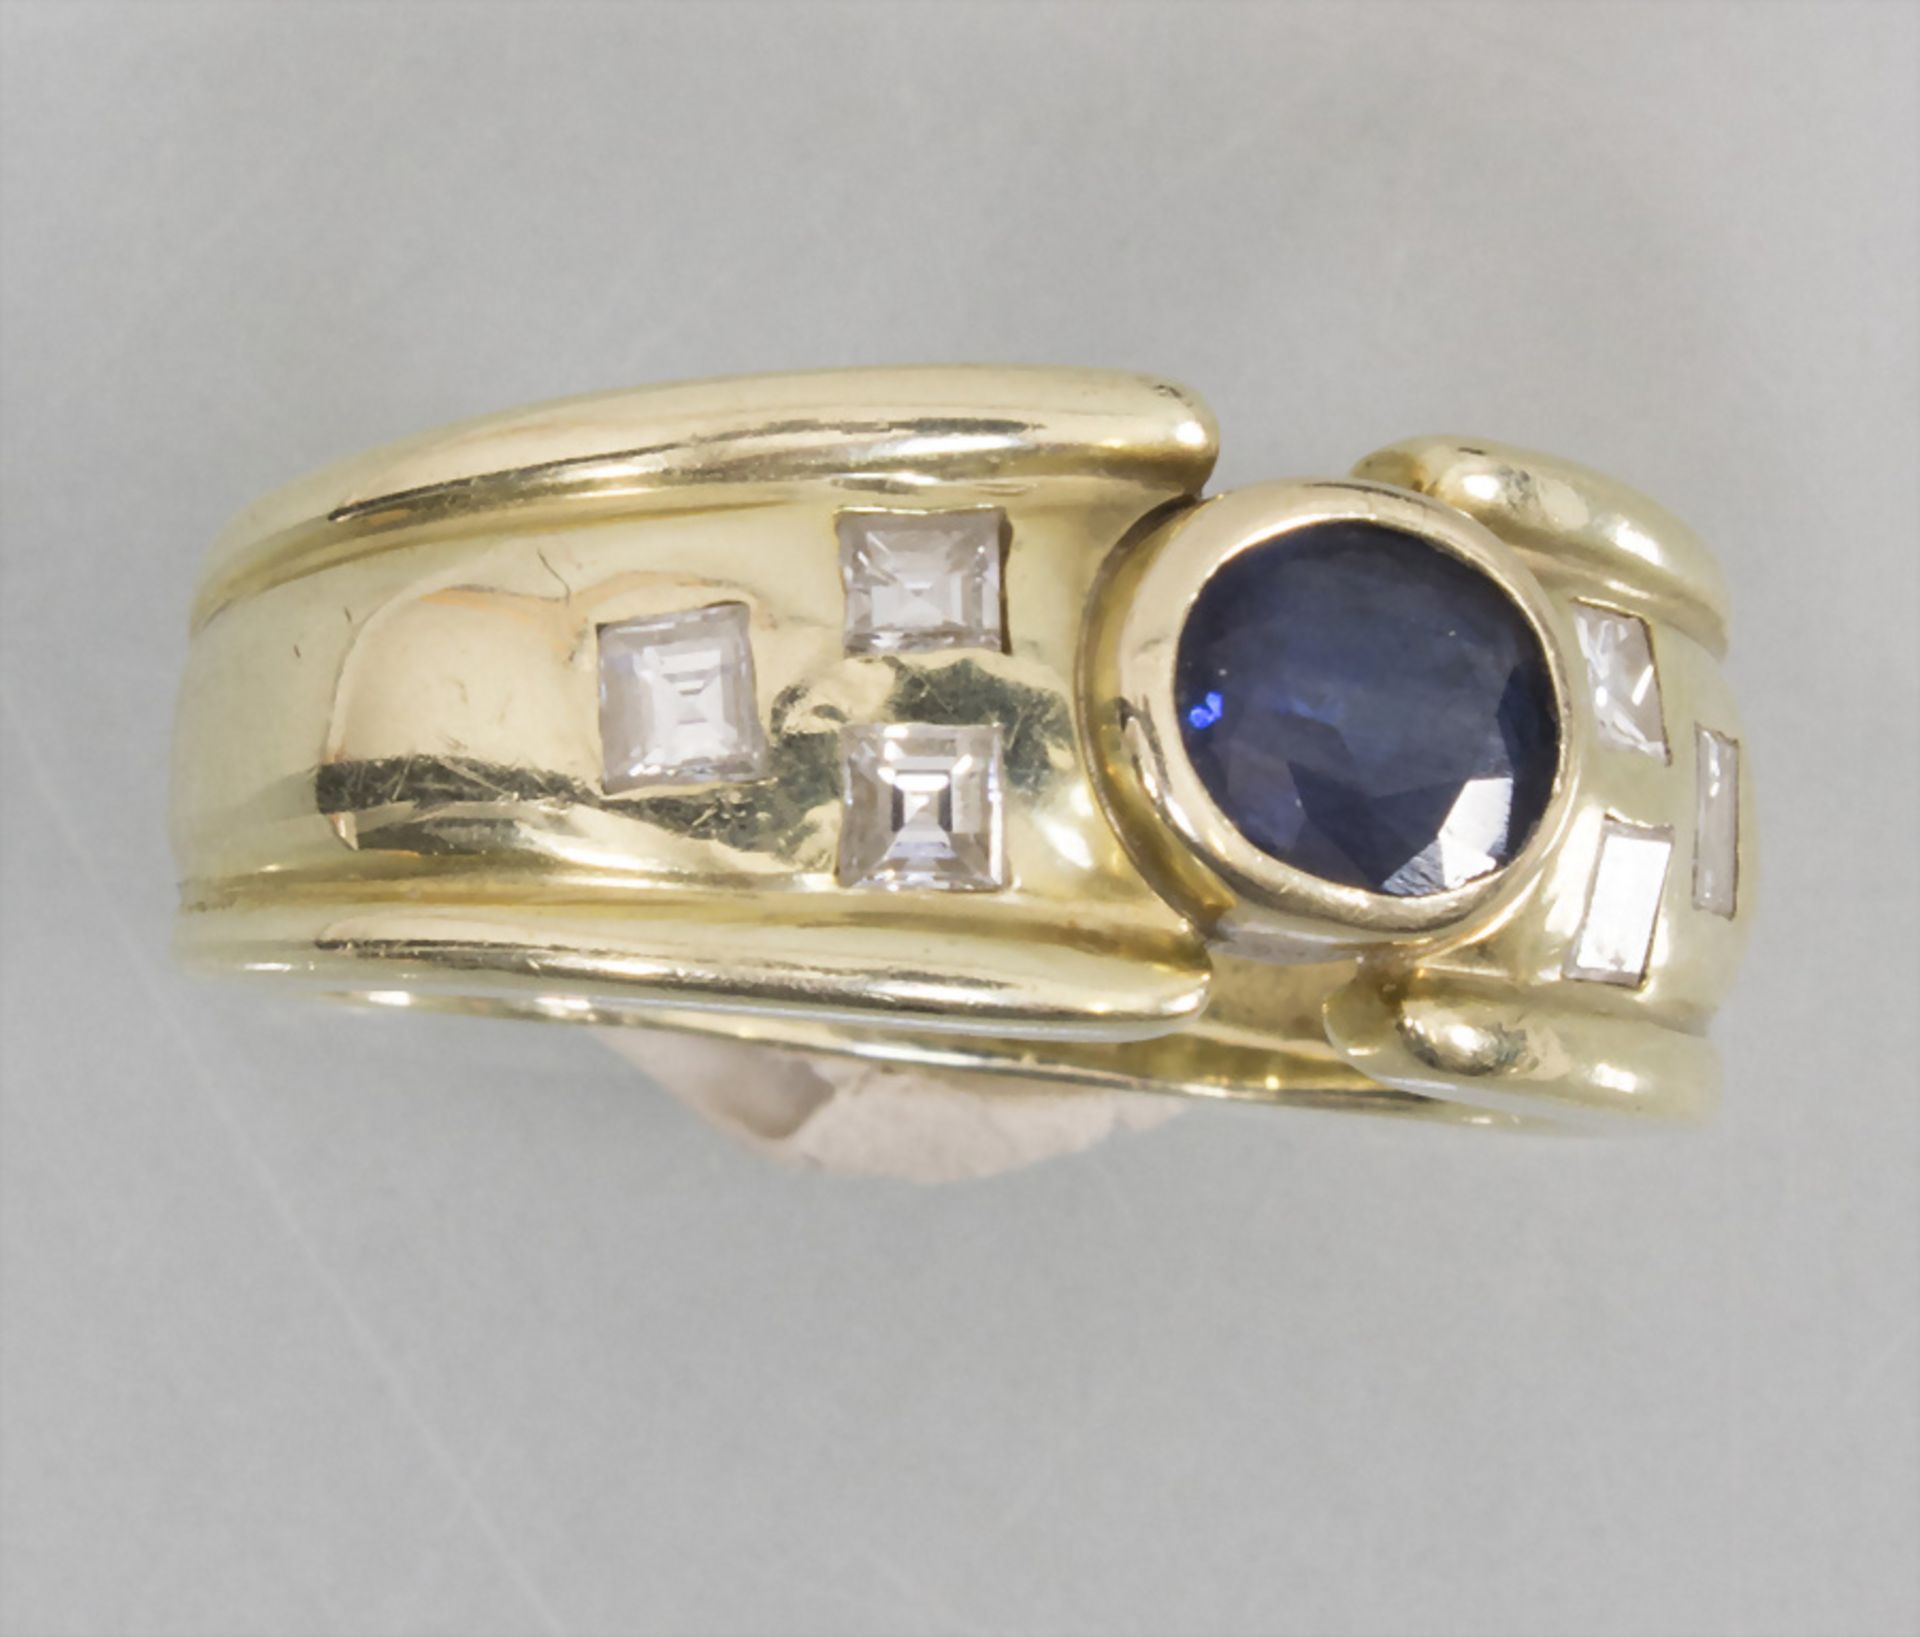 Damenring mit Saphir und Diamanten / A ladies 14k gold ring with sapphire and diamonds - Bild 2 aus 6